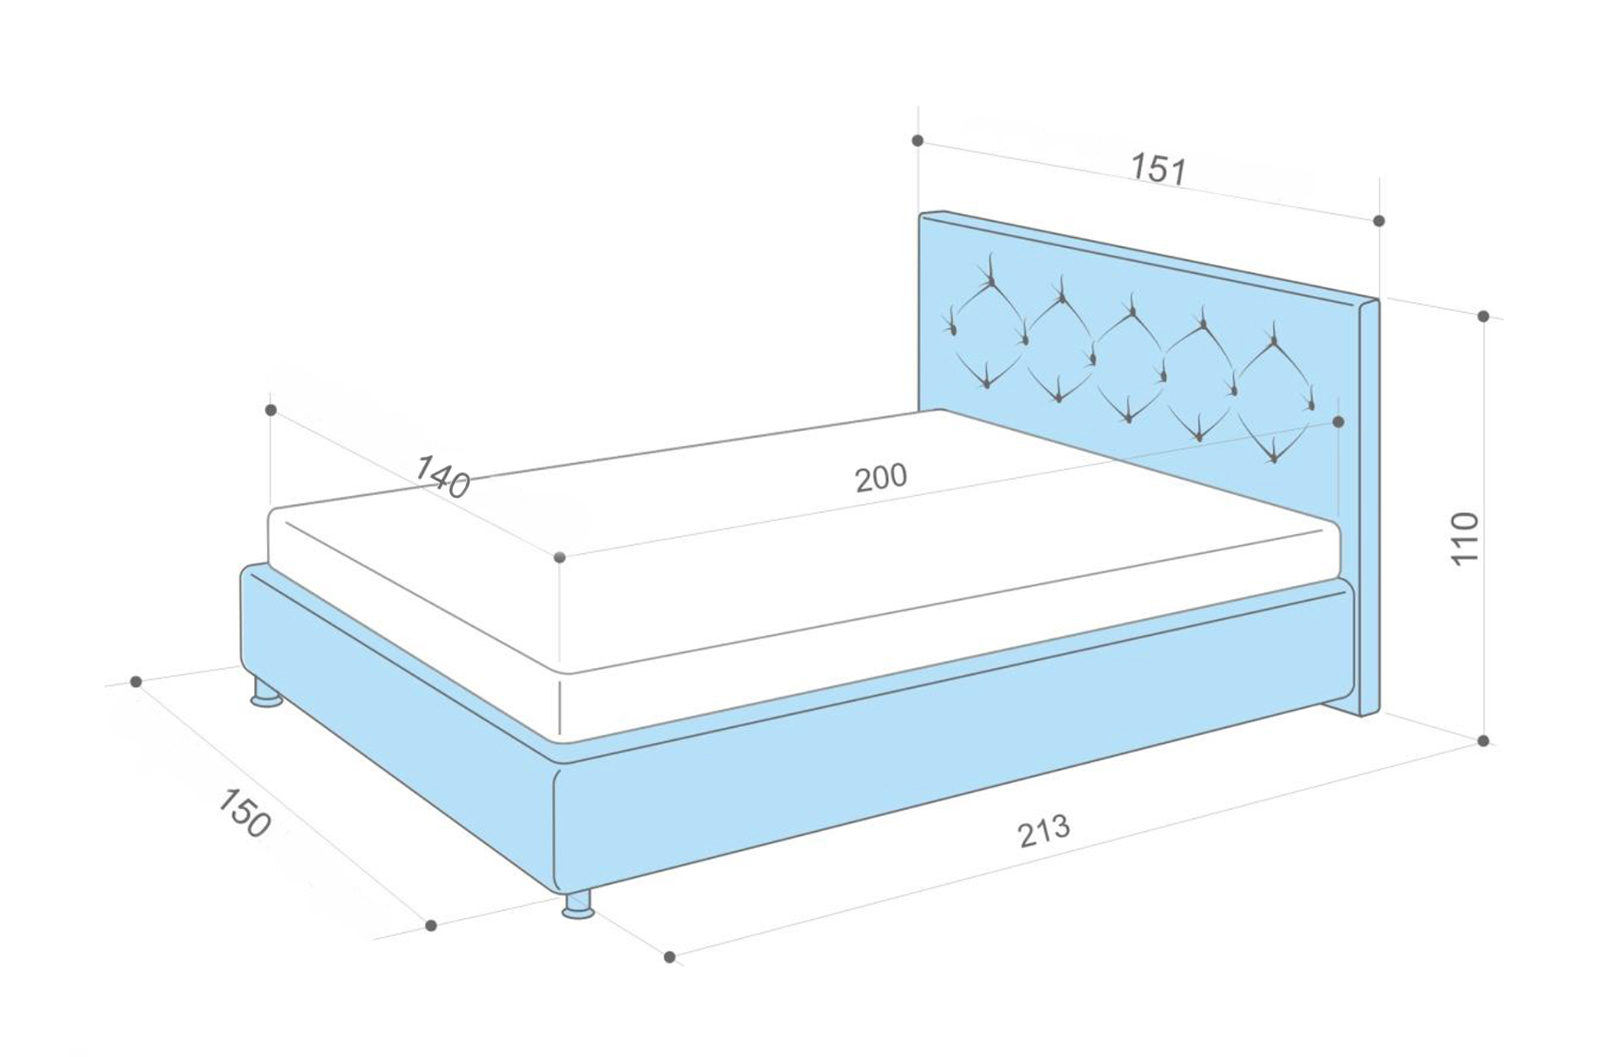 Размер белья на двуспальную кровать